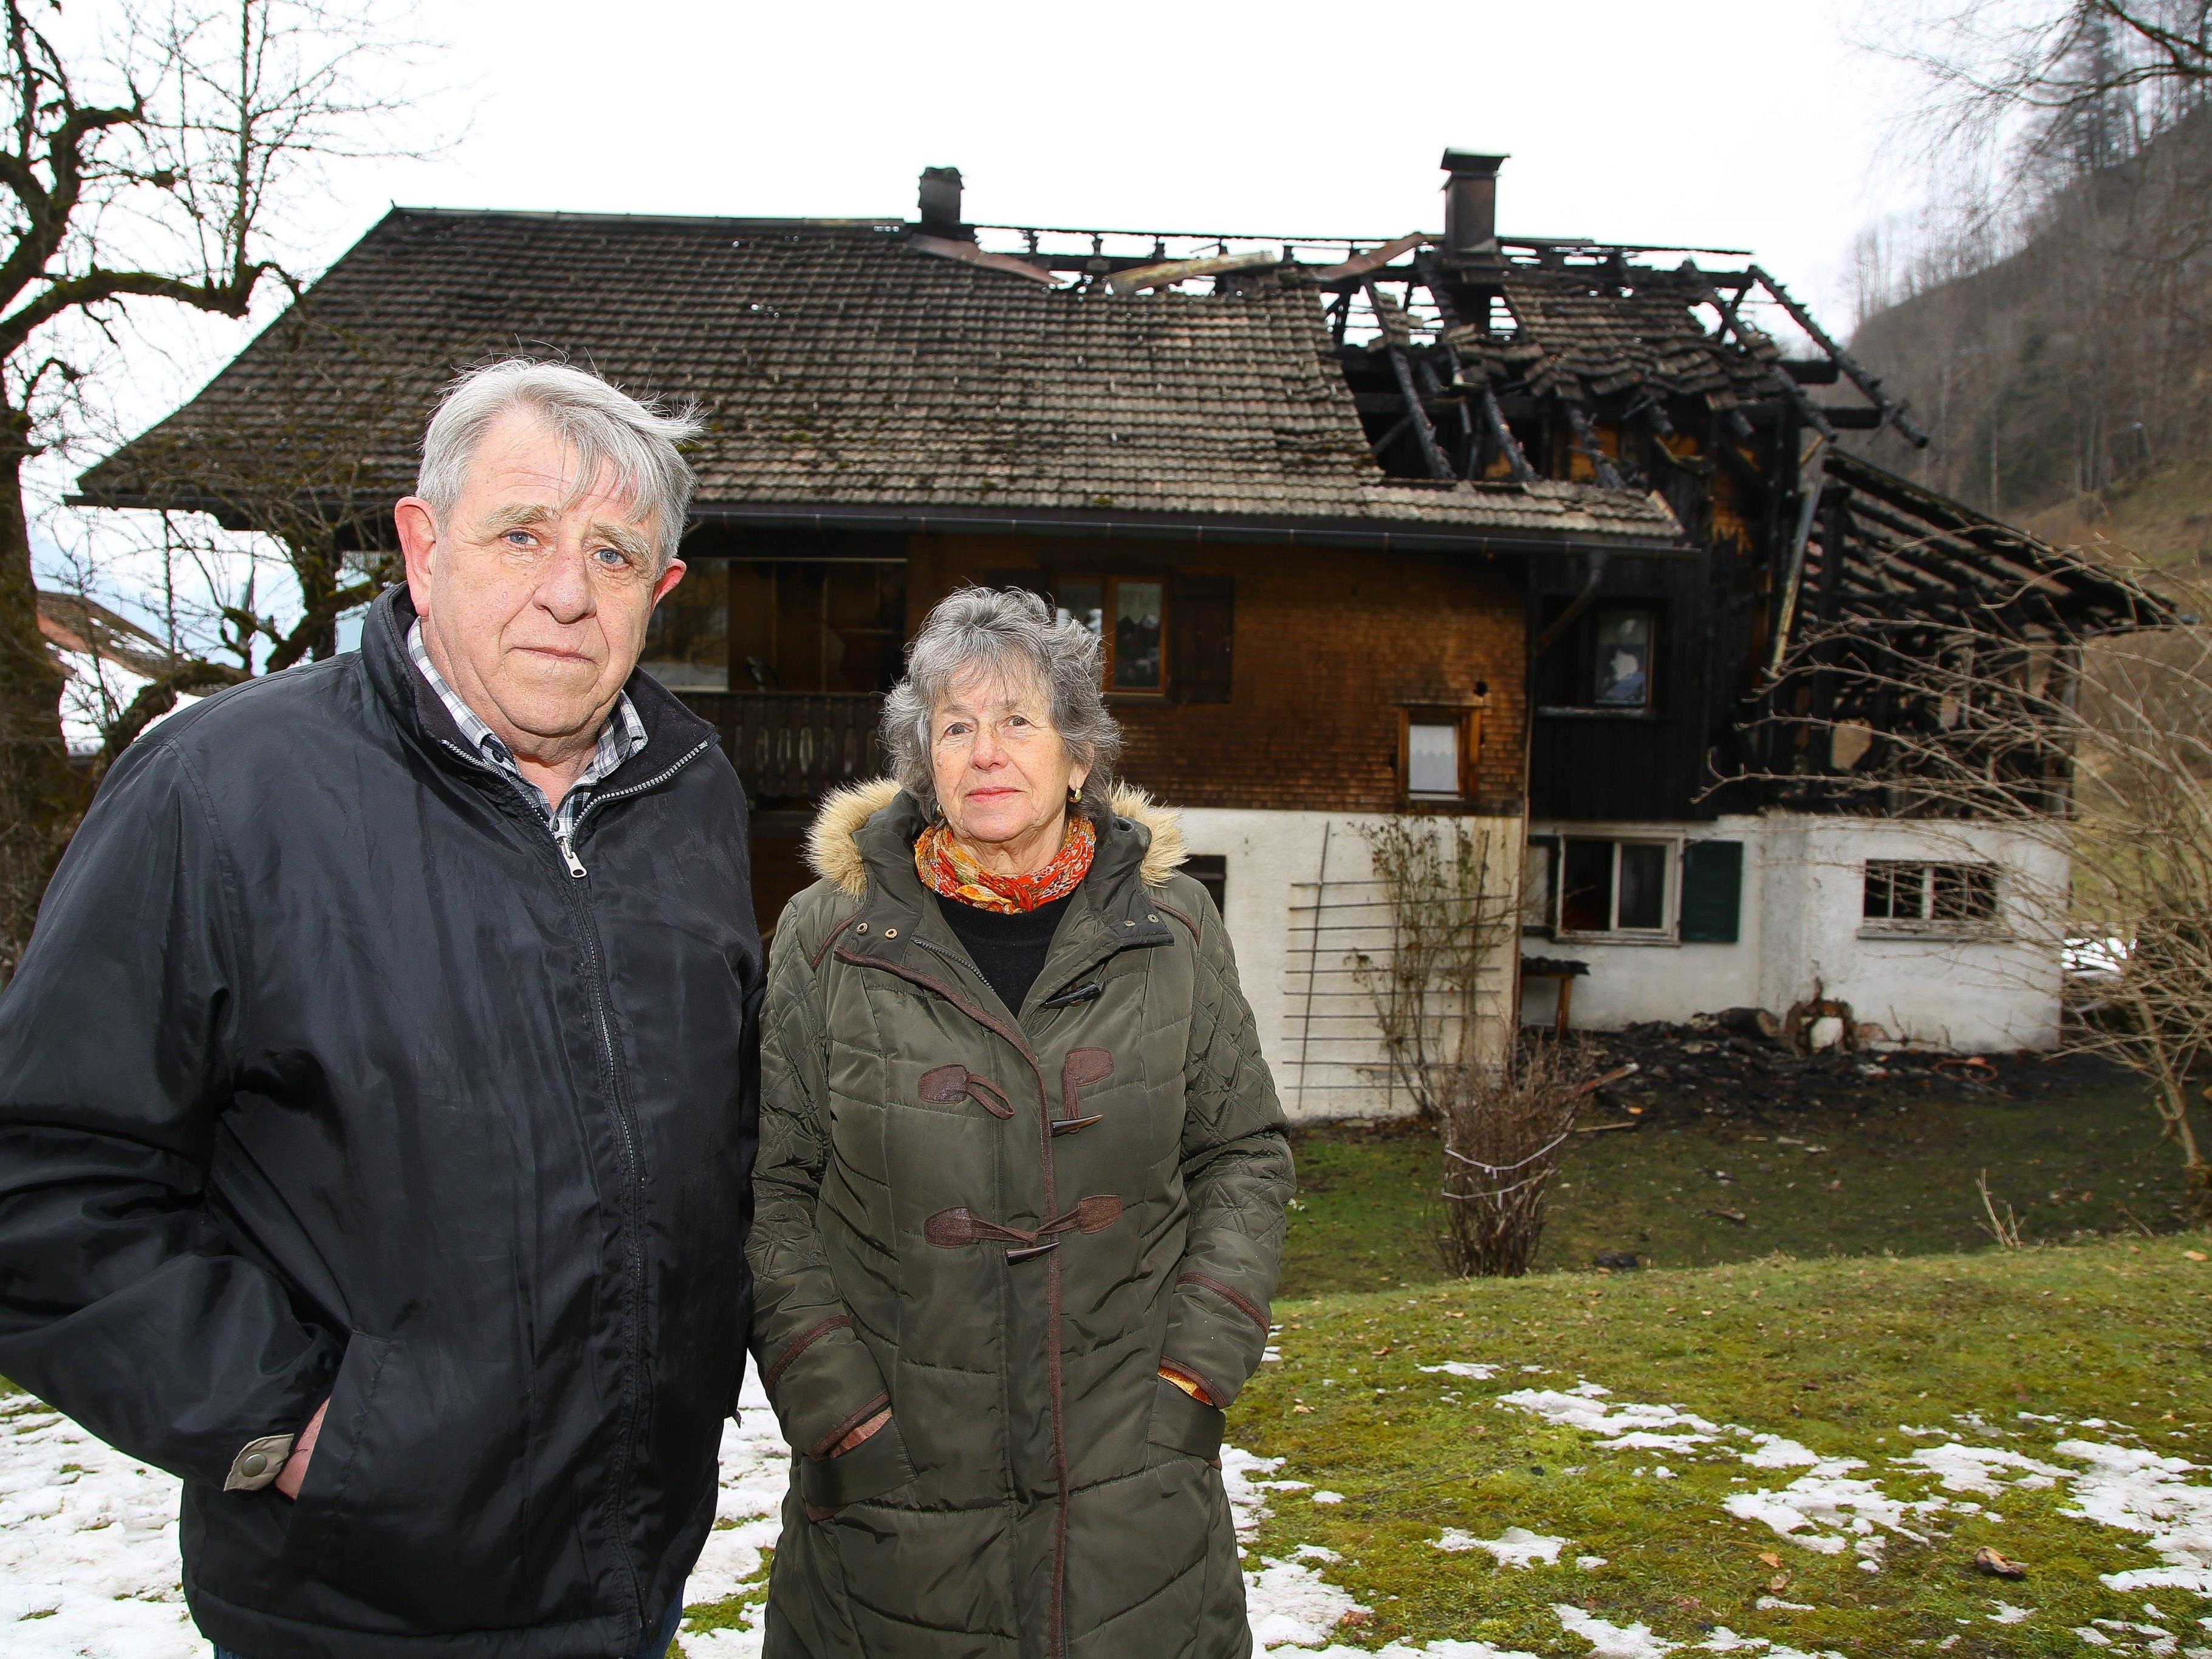 Hermine Schuster bemerkte das Feuer und alarmierte ihren Mann, Altbürgermeister Elmar.